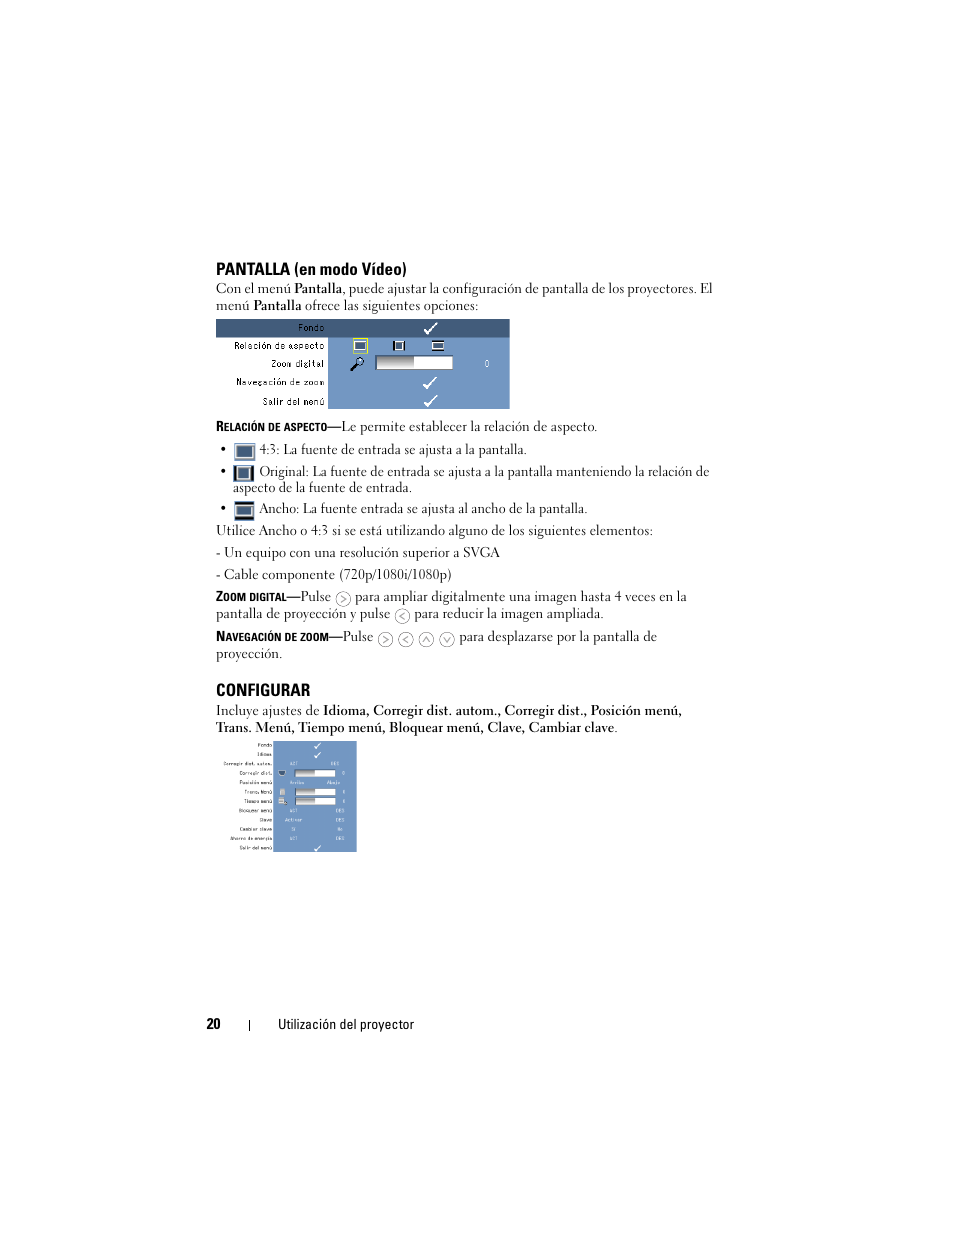 Pantalla (en modo vídeo), Configurar | Dell M109S Projector Manual del usuario | Página 20 / 36